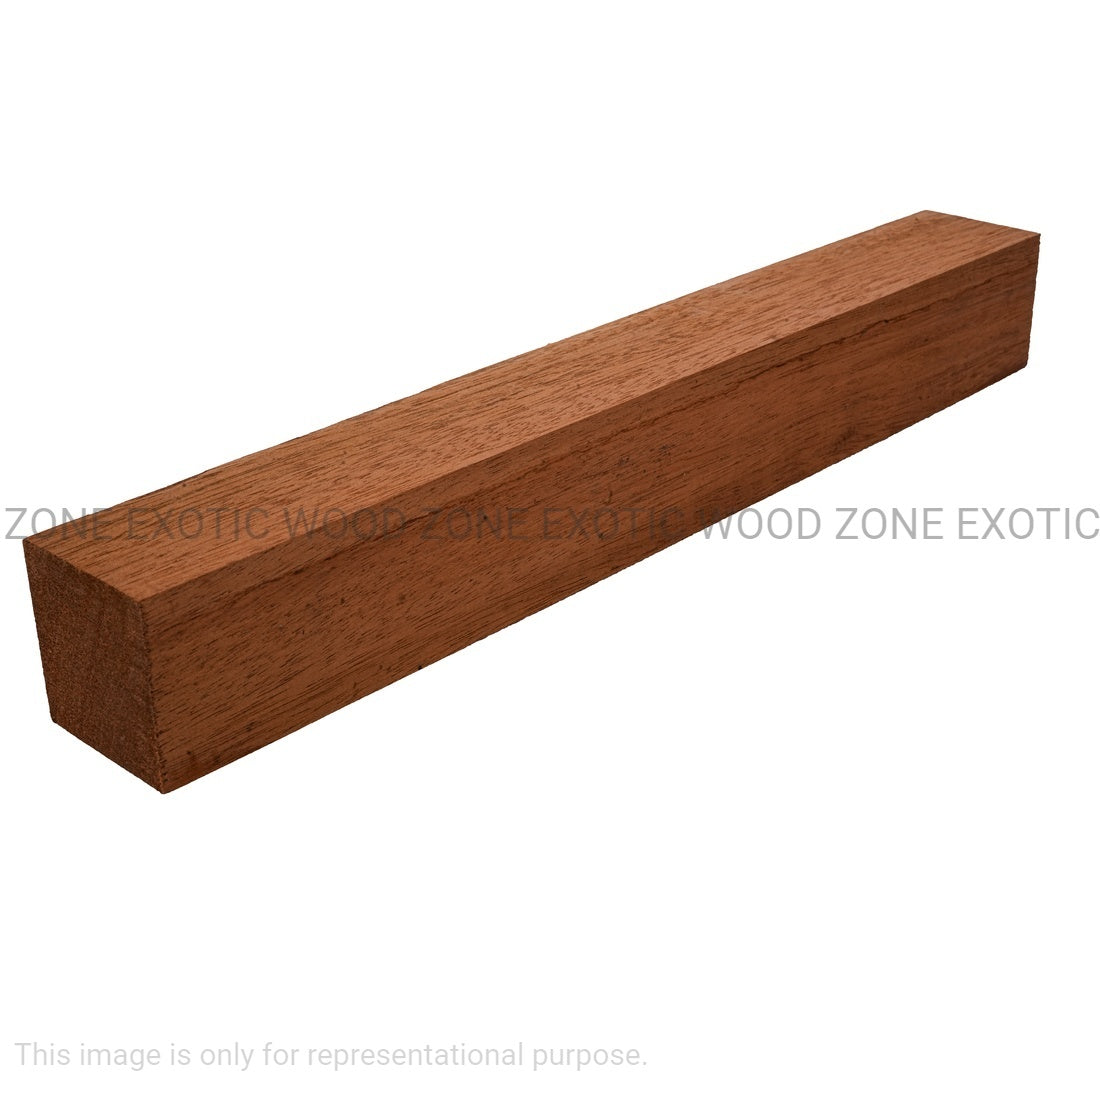 Combo Pack 5, Genuine Honduran Mahogany Turning Blanks 18” x 1-1/2” x 1-1/2” - Exotic Wood Zone - Buy online Across USA 